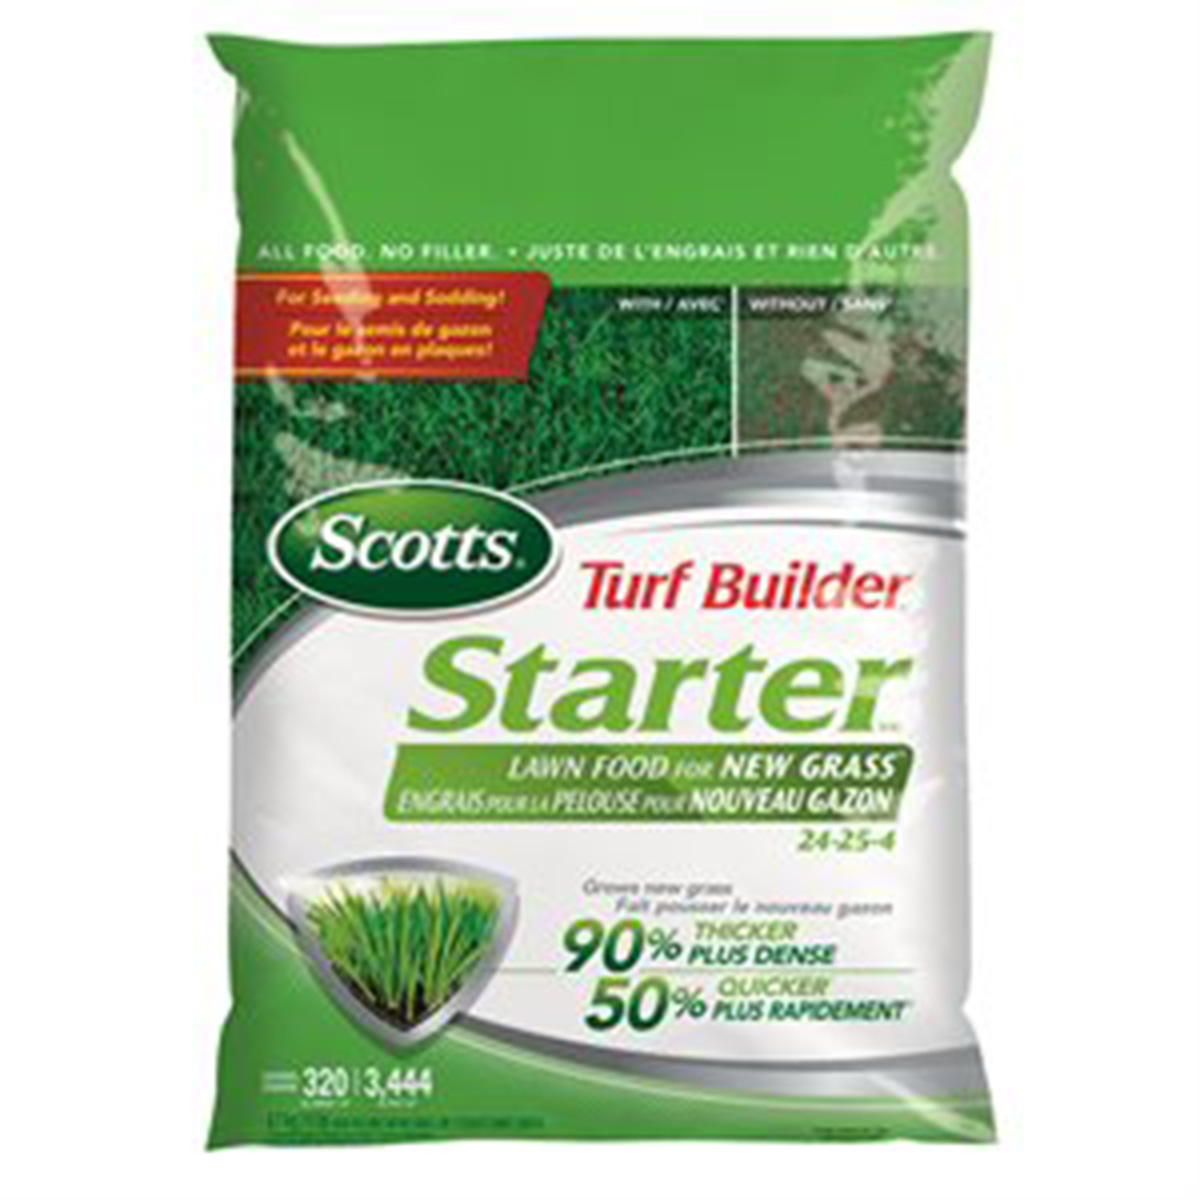 Scotts Turf Builder Starter Lawn Food 24-25-4 1.4kg